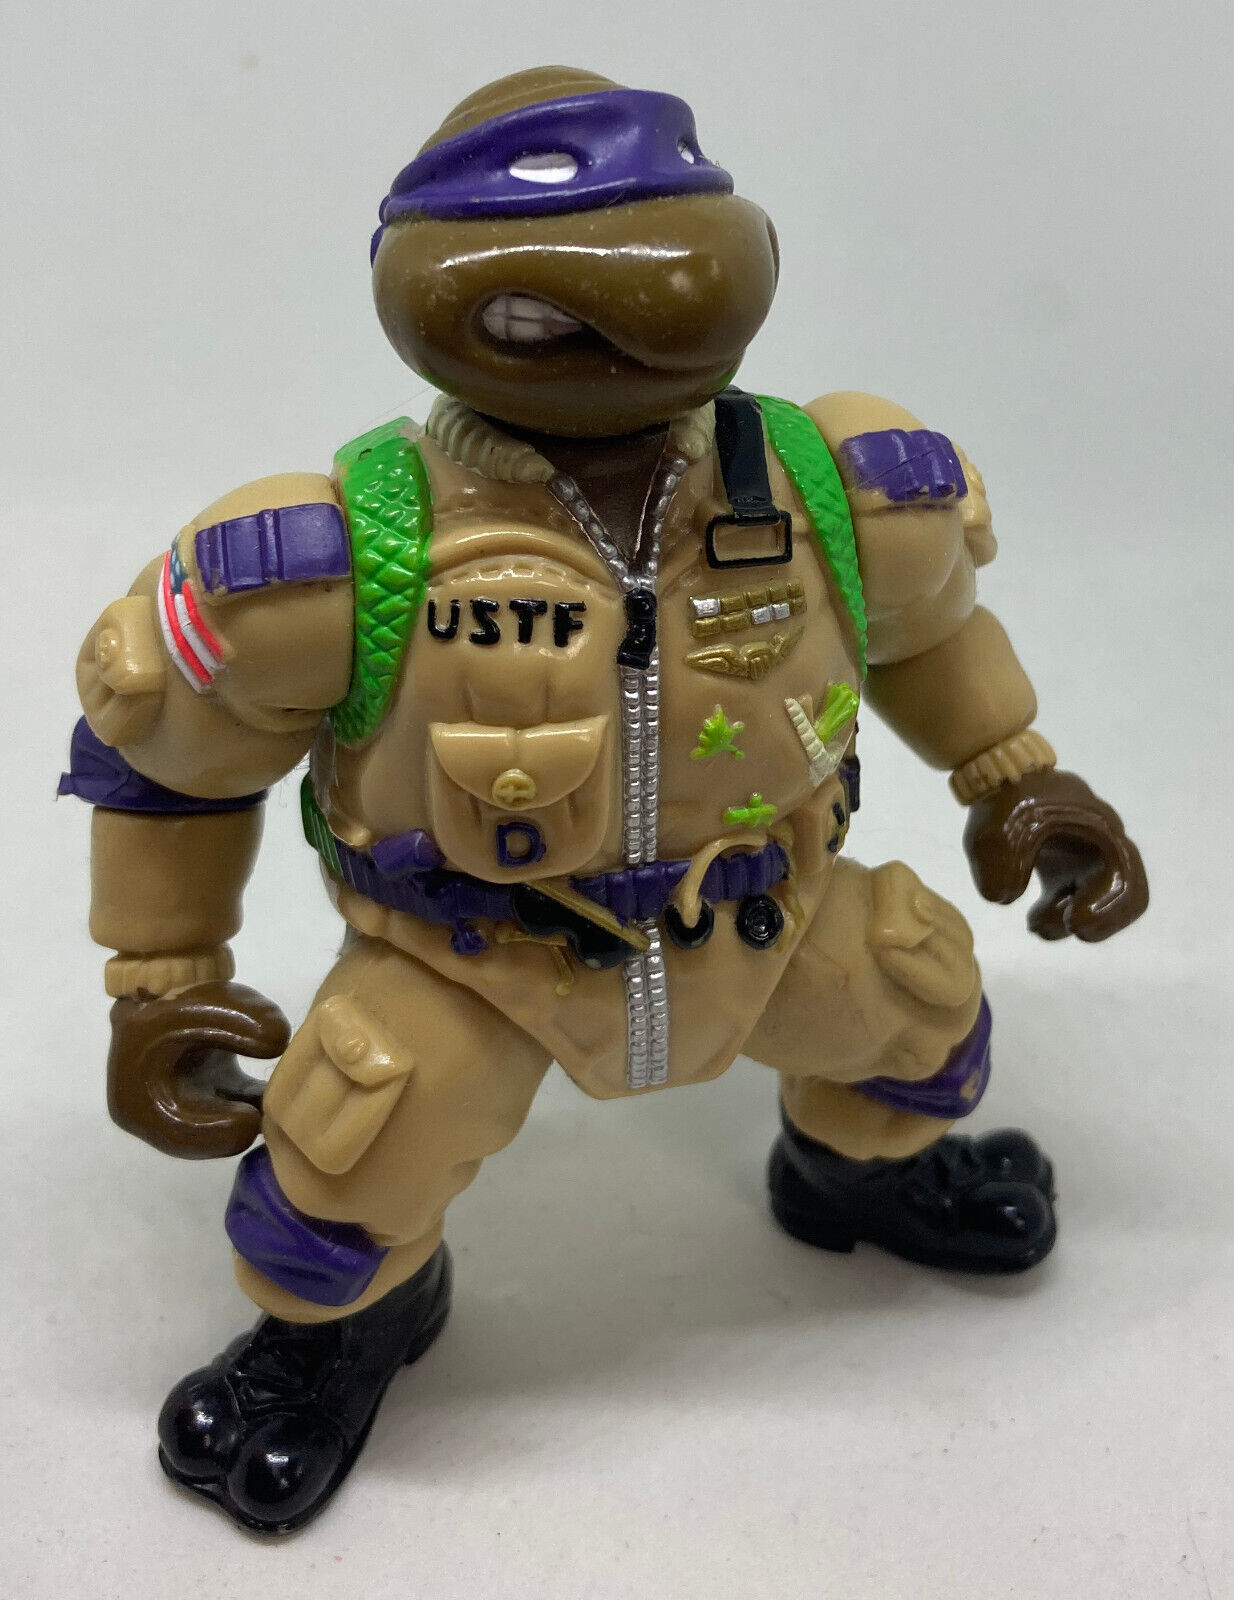 1991 Teenage Mutant Ninja Turtles USTF Pilot Donatello Figure TMNT Playmates Don - $9.99